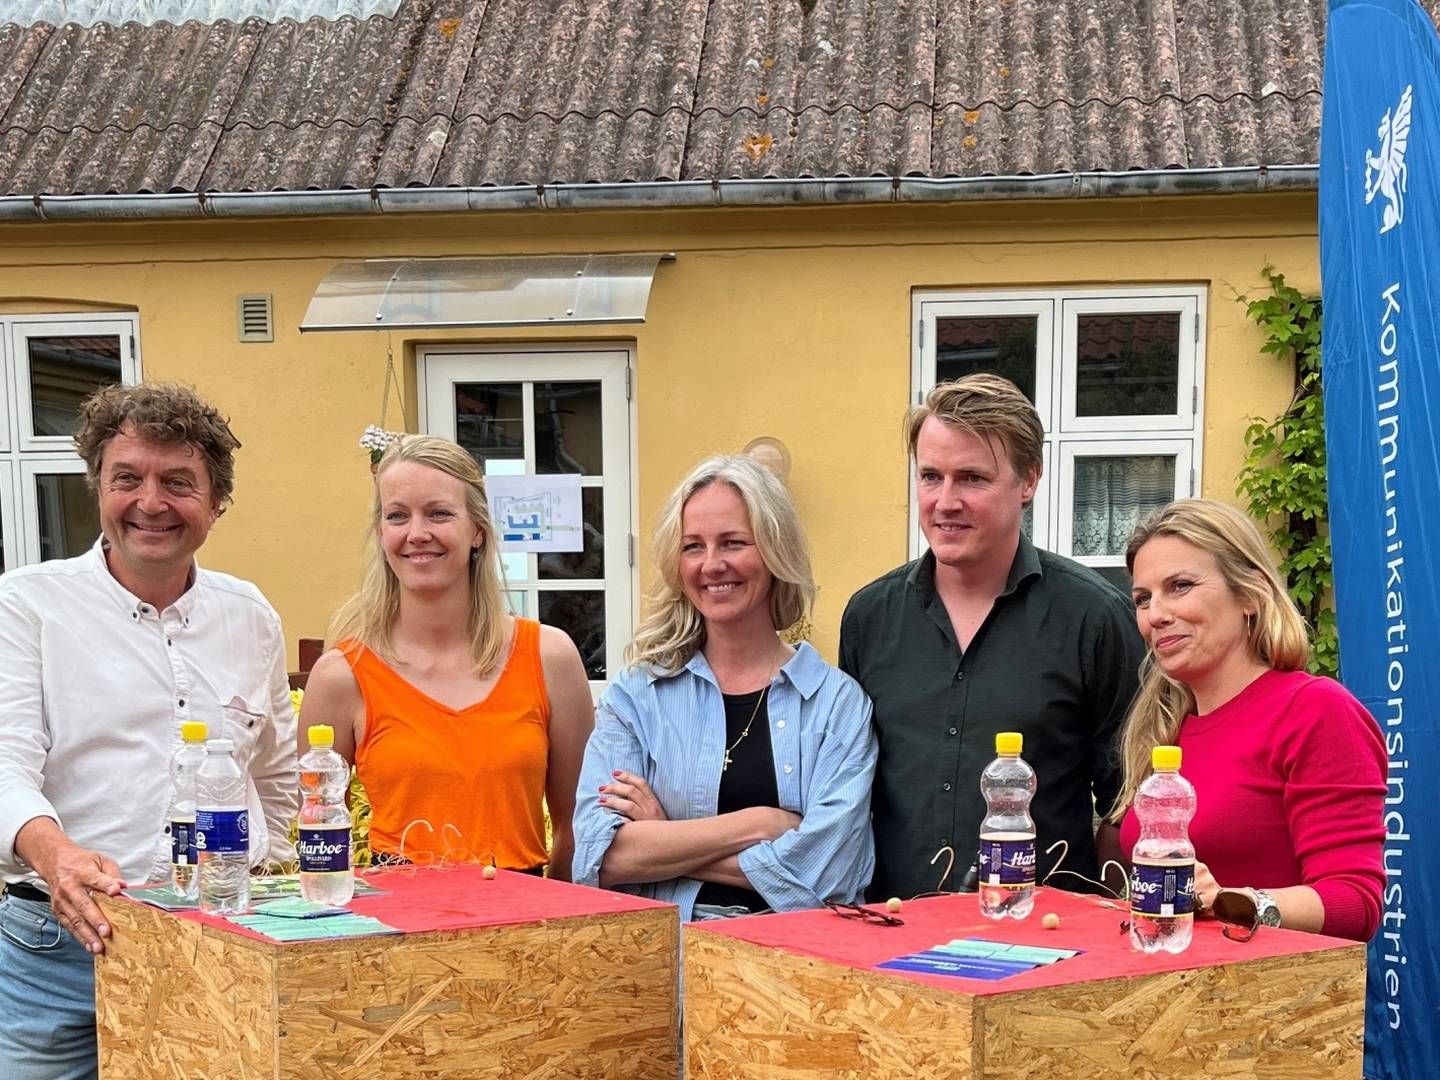 Fra venstre ses moderator Martin Einfeldt og paneldeltagerne: Signe Fribo, Ida Auken, Charlie Stjerneklar og Camille Aulkær Andersen. | Foto: Grakom / PR